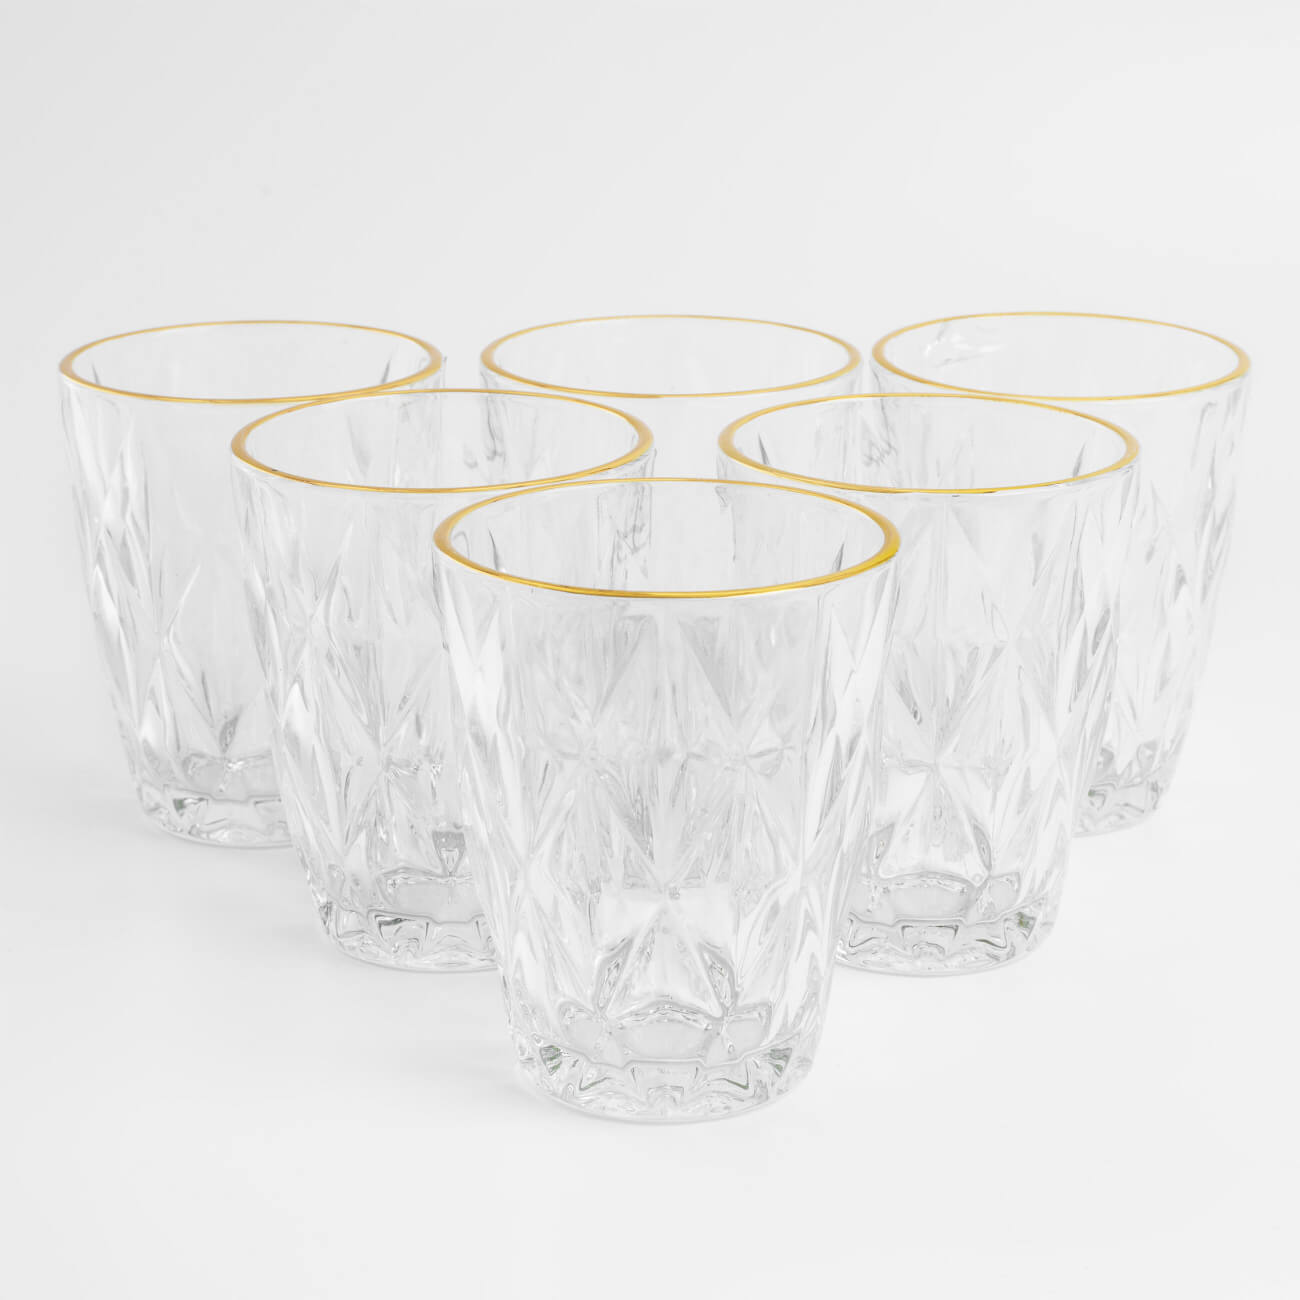 бокал для вина 300 мл 2 шт стекло с золотистым кантом triangle gold Стакан, 270 мл, 6 шт, стекло Р, с золотистым кантом, Rhomb gold